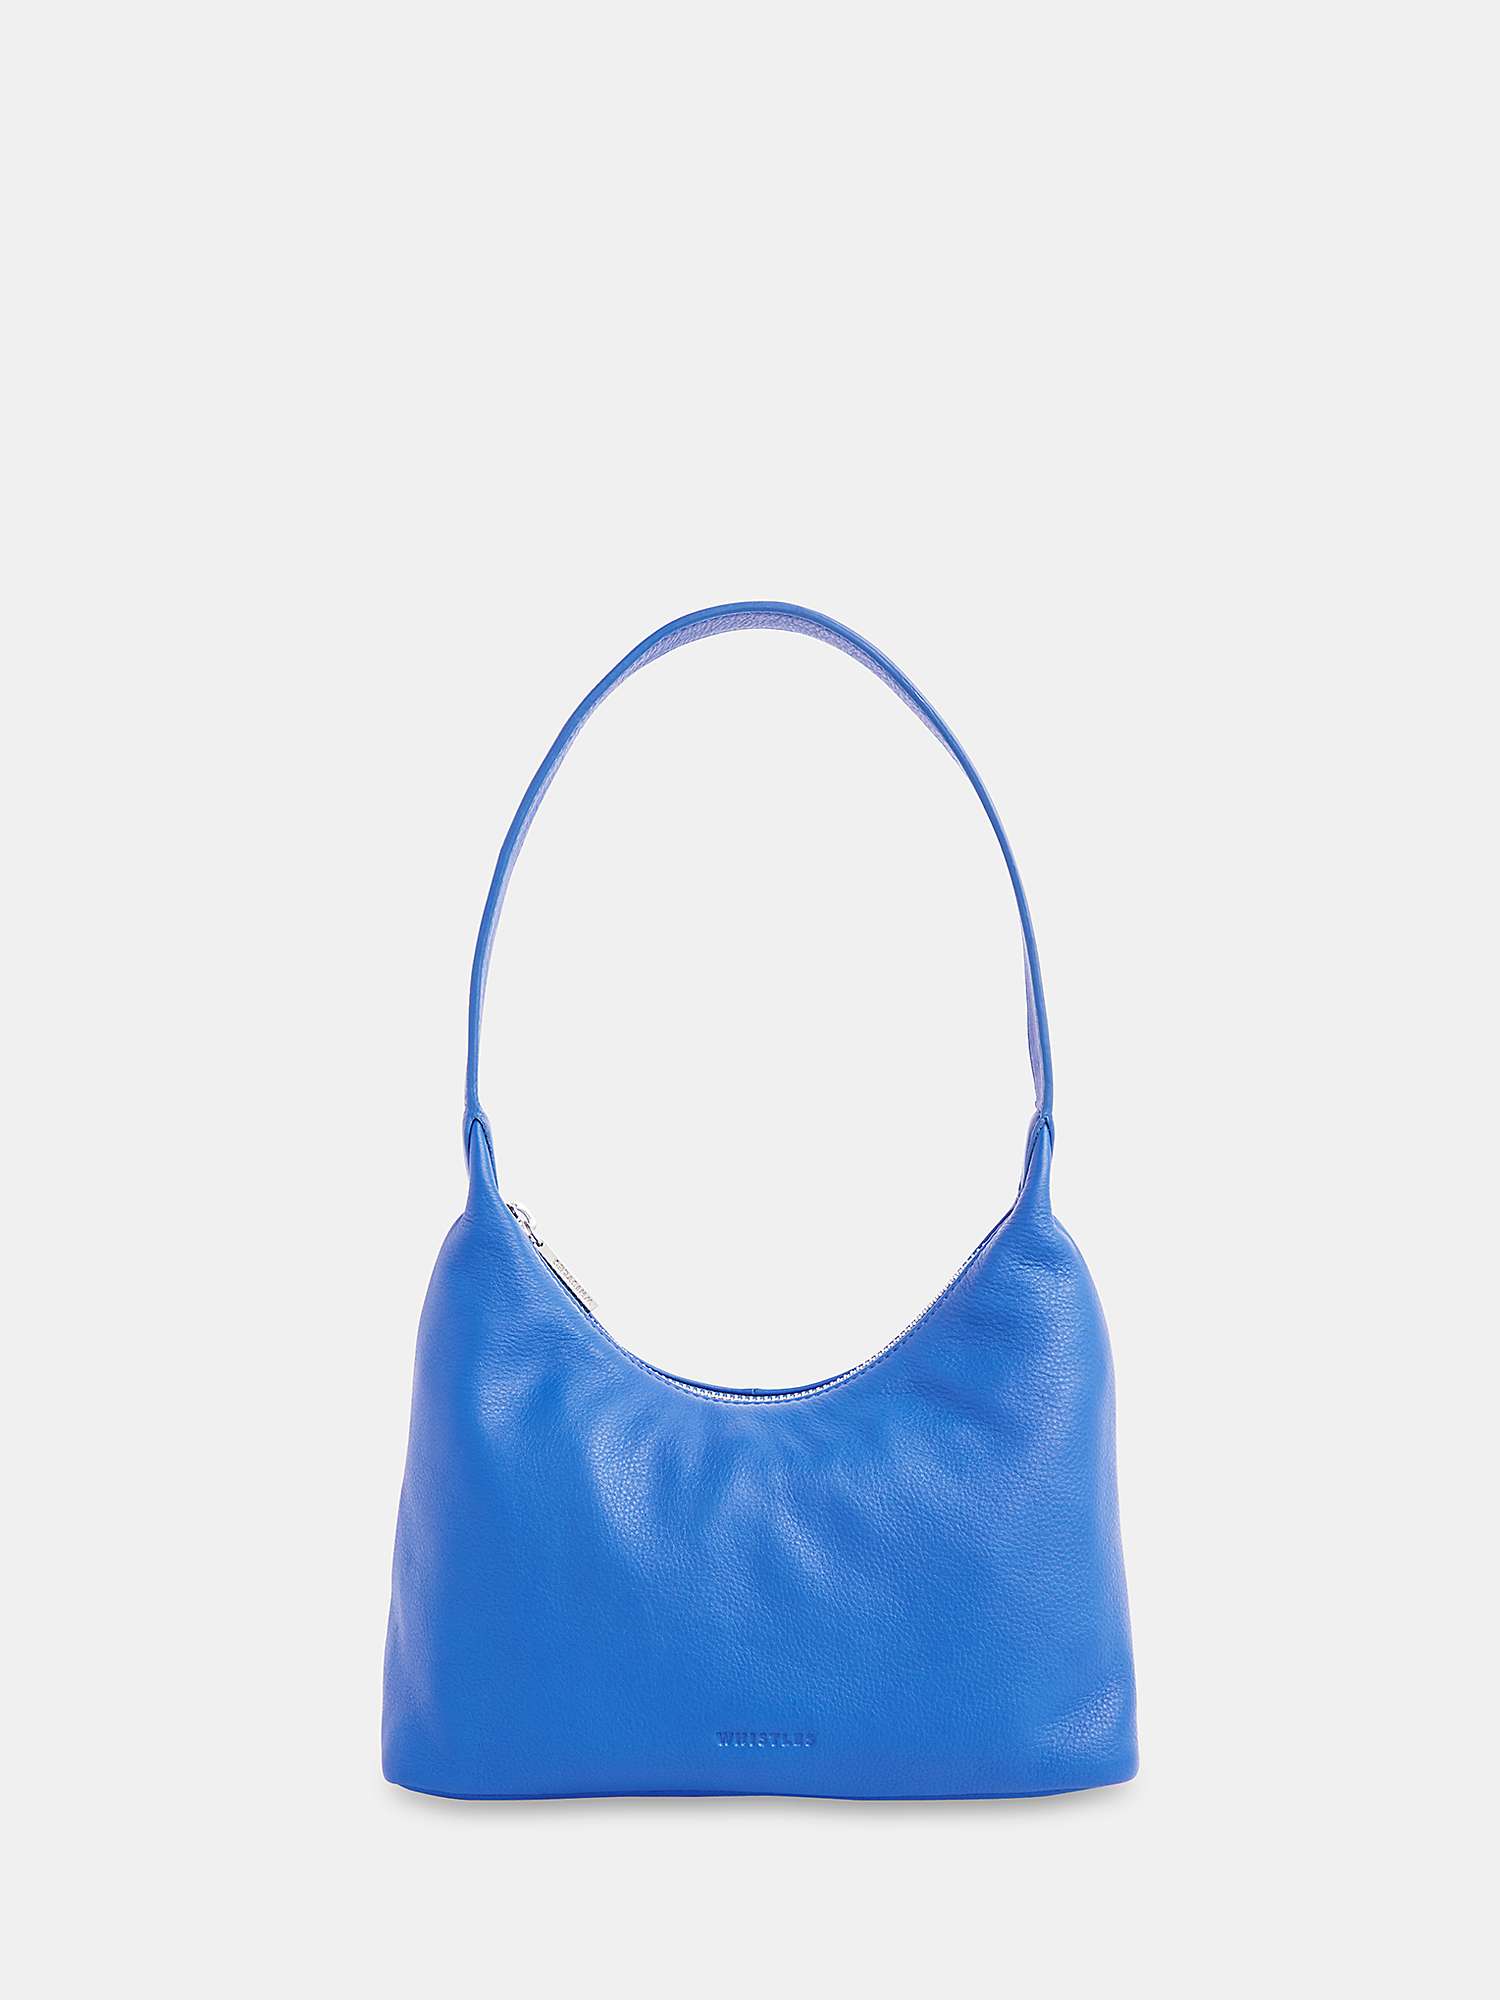 Buy Whistles Emmie Top Handle Leather Shoulder Bag Online at johnlewis.com